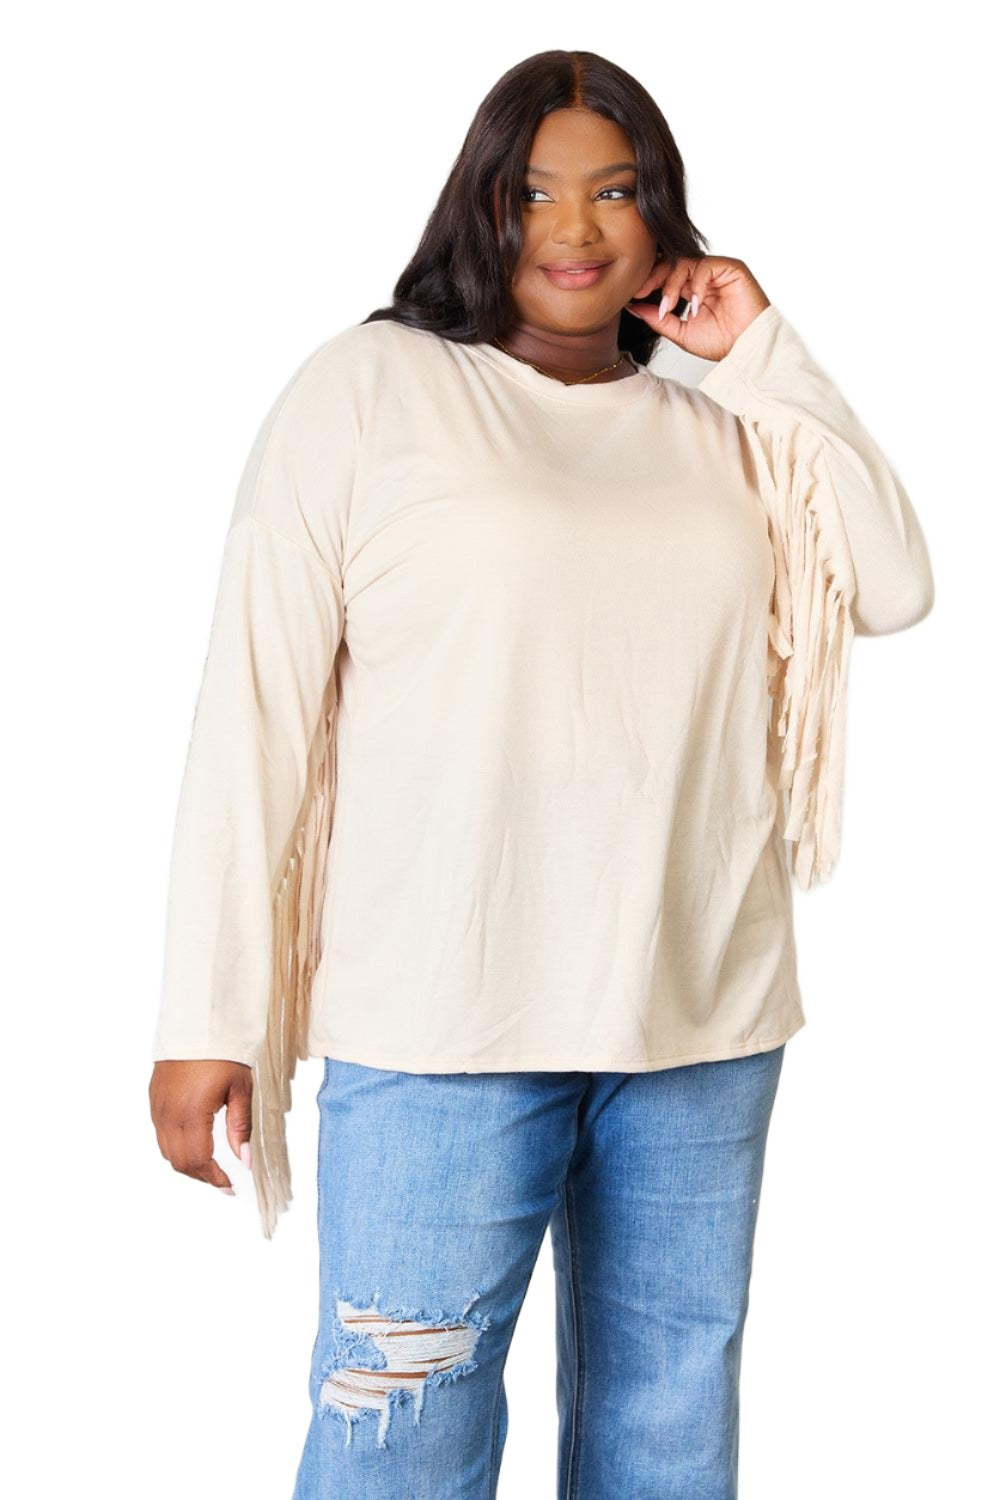 Women's Shirts Celeste Full Size Fringe Detail Long Sleeve Blouse